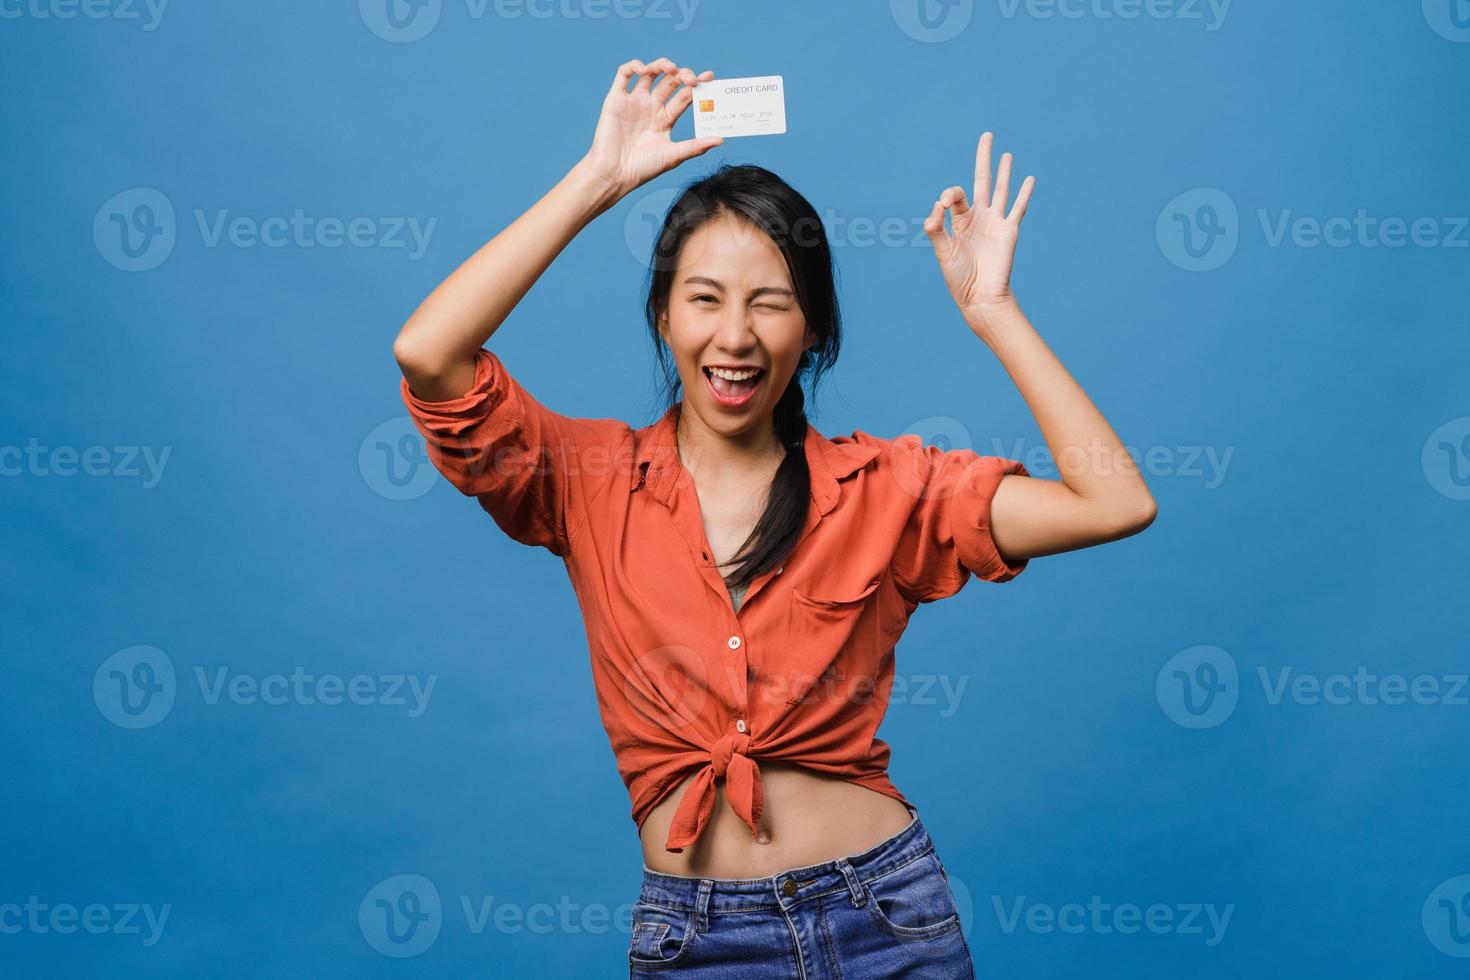 la giovane donna asiatica mostra la carta di credito con l'espressione positiva, sorride ampiamente, vestita con abiti casual sentendo felicità e stando isolata su sfondo blu. concetto di espressione facciale. foto